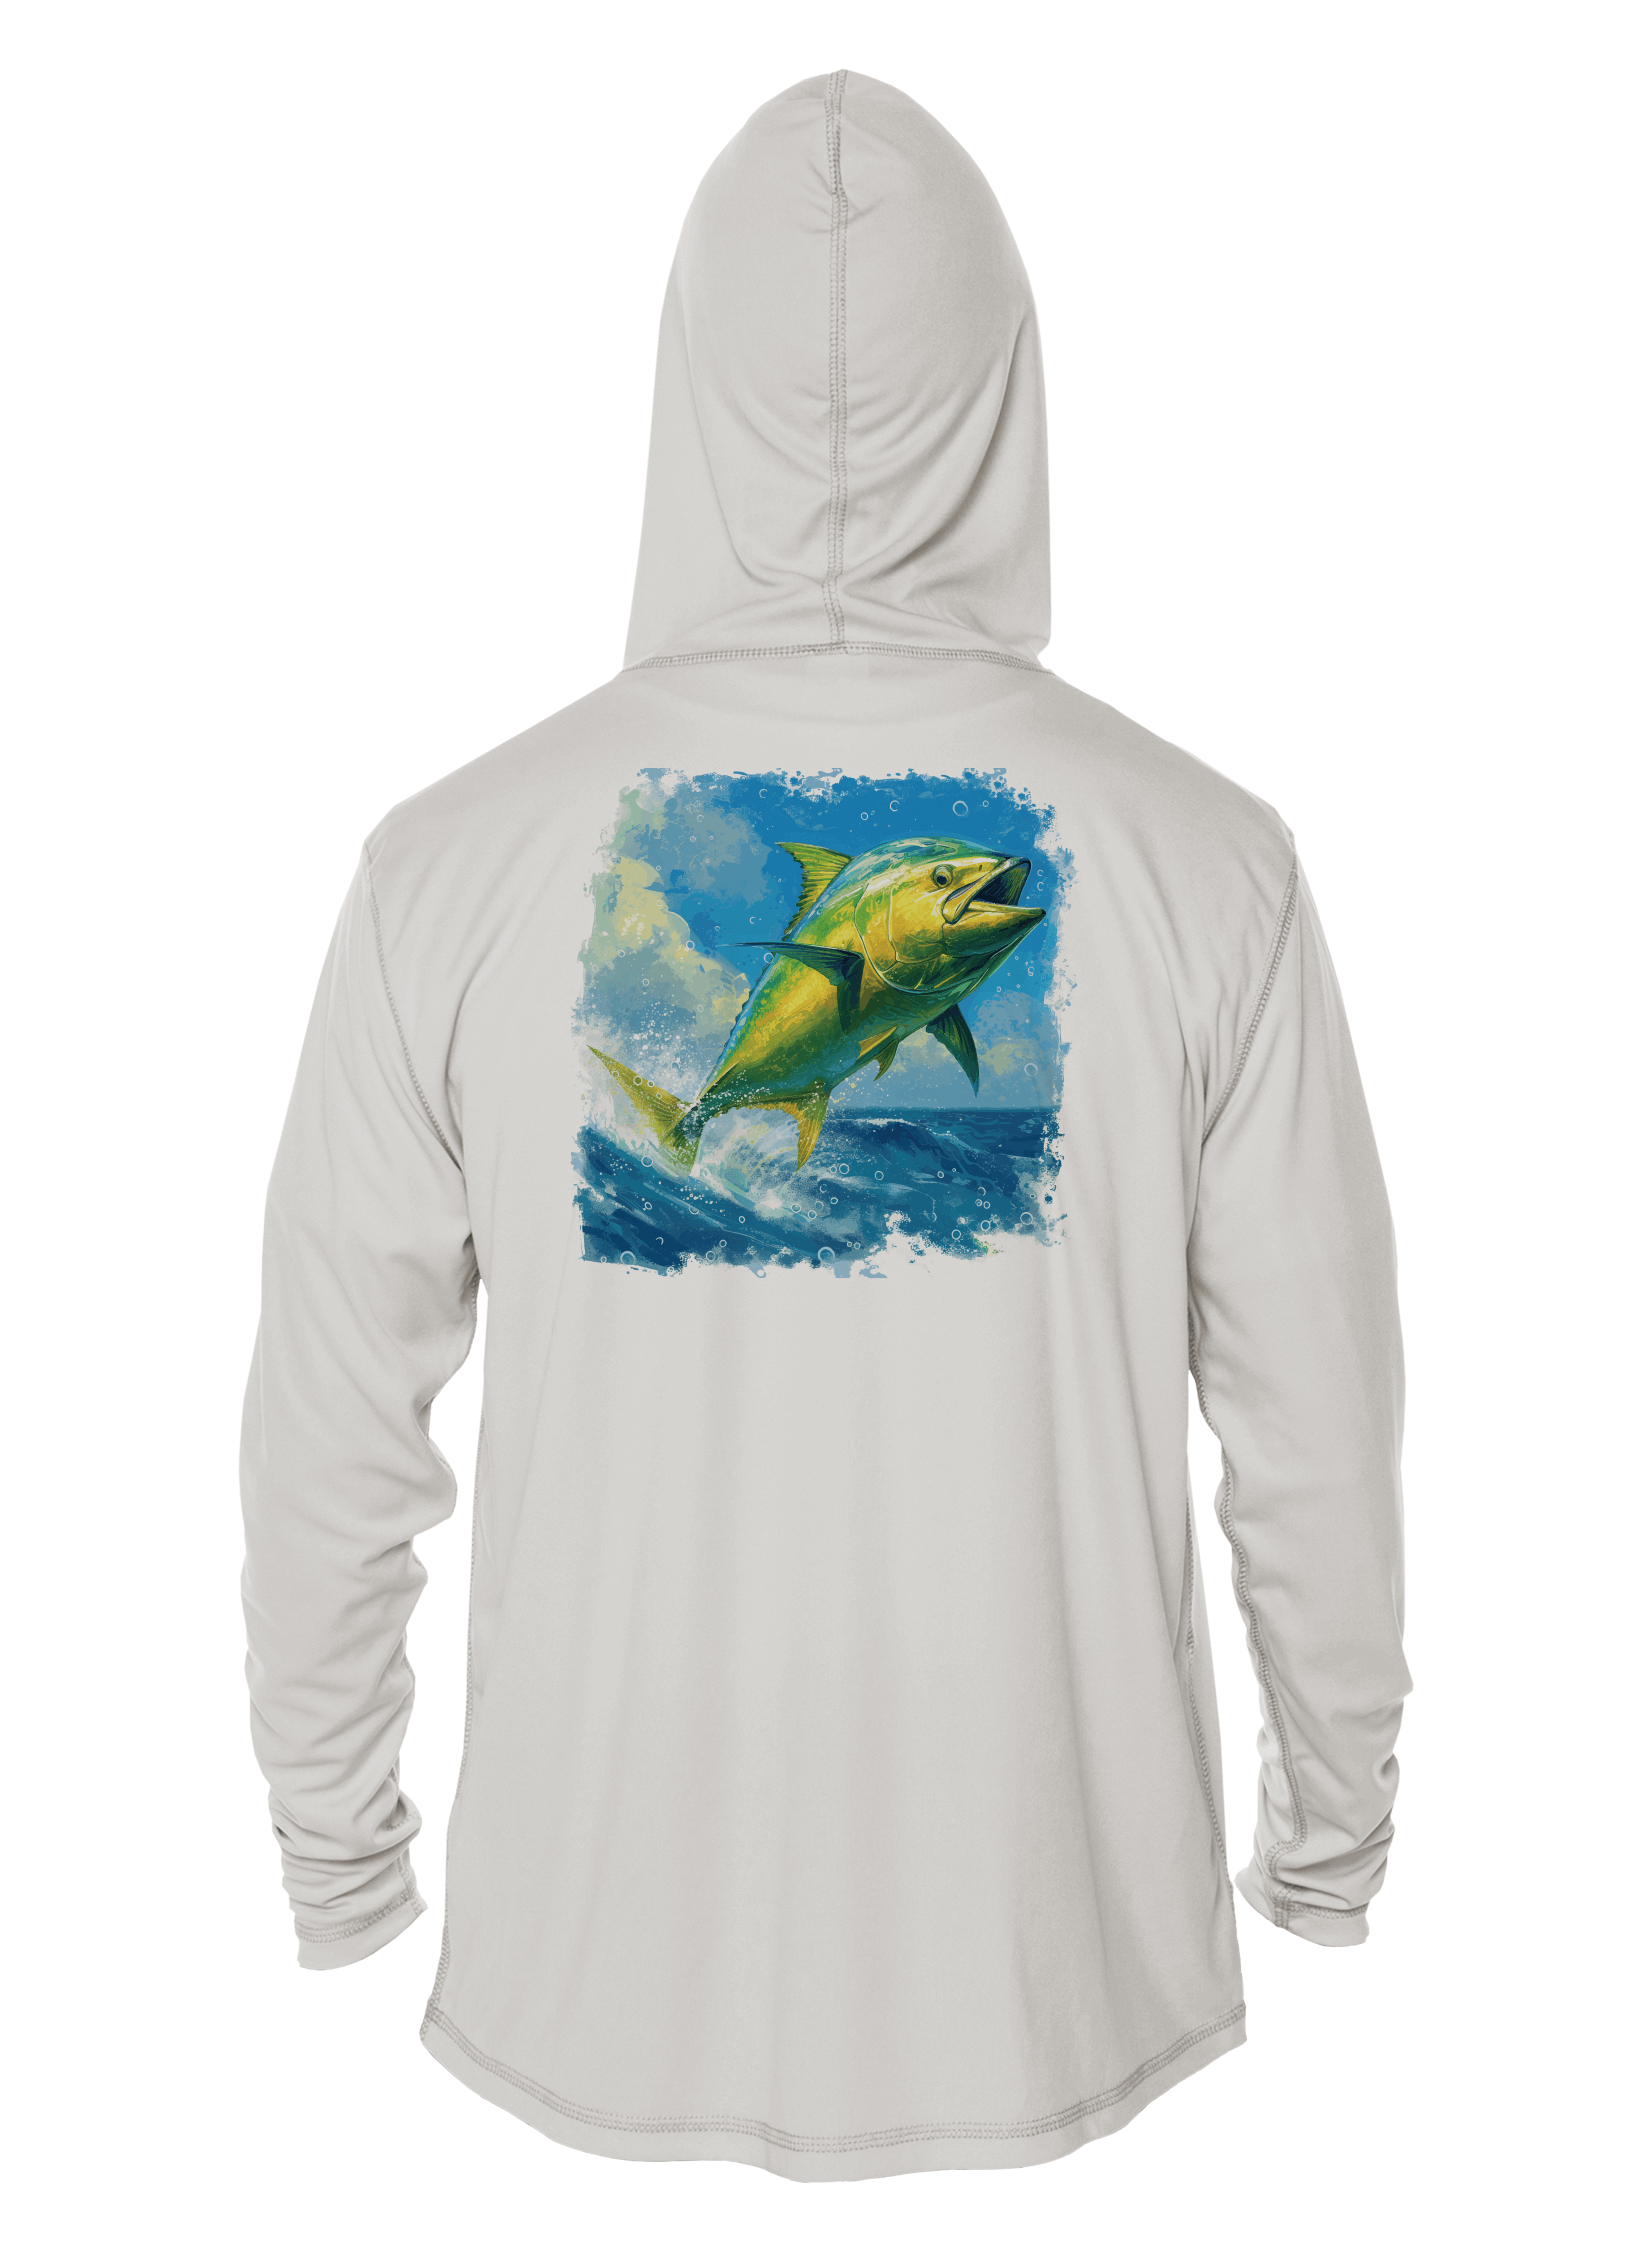 Fishing Shirt Outfitters - Angler's Collection: Mahi-Mahi - UPF 50